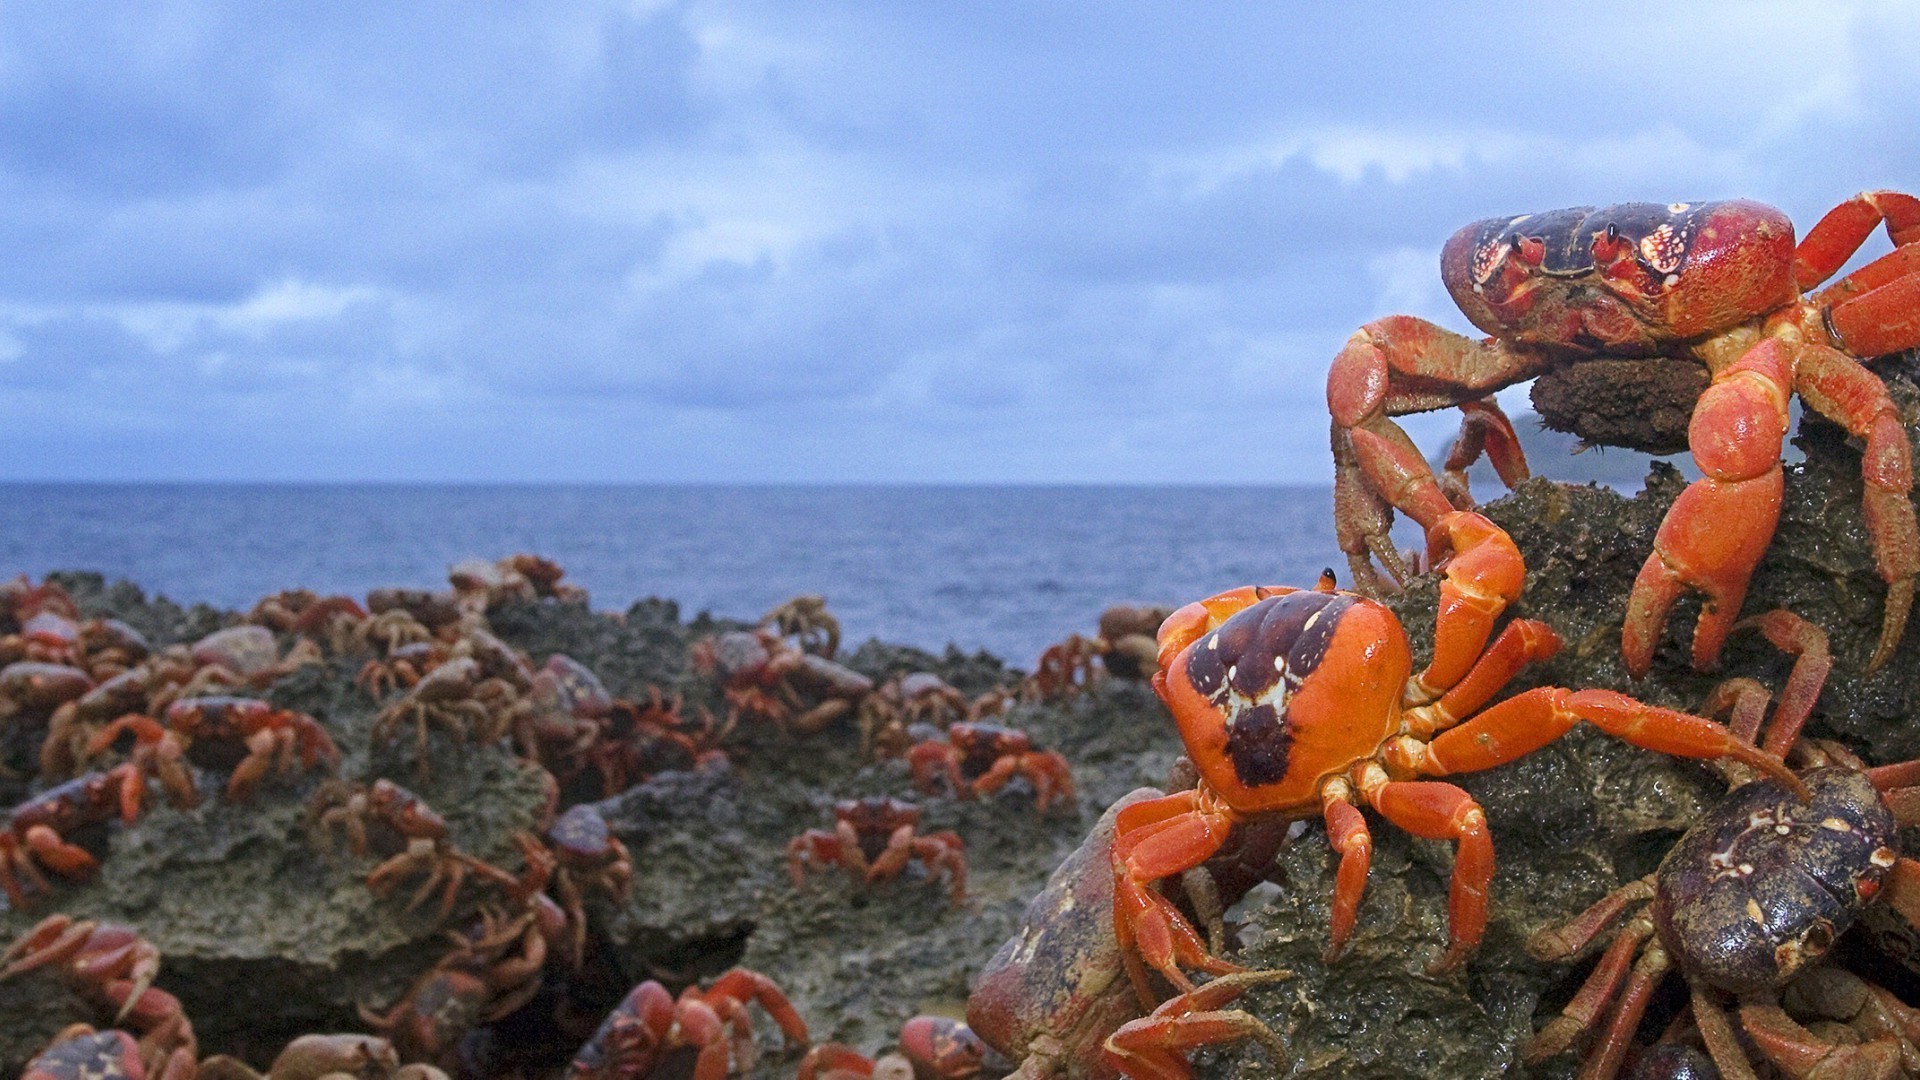 краб море океан моллюски рачок воды морской моря природа беспозвоночных пляж рыбы морепродукты на открытом воздухе остров лобстер залив тропический пейзаж